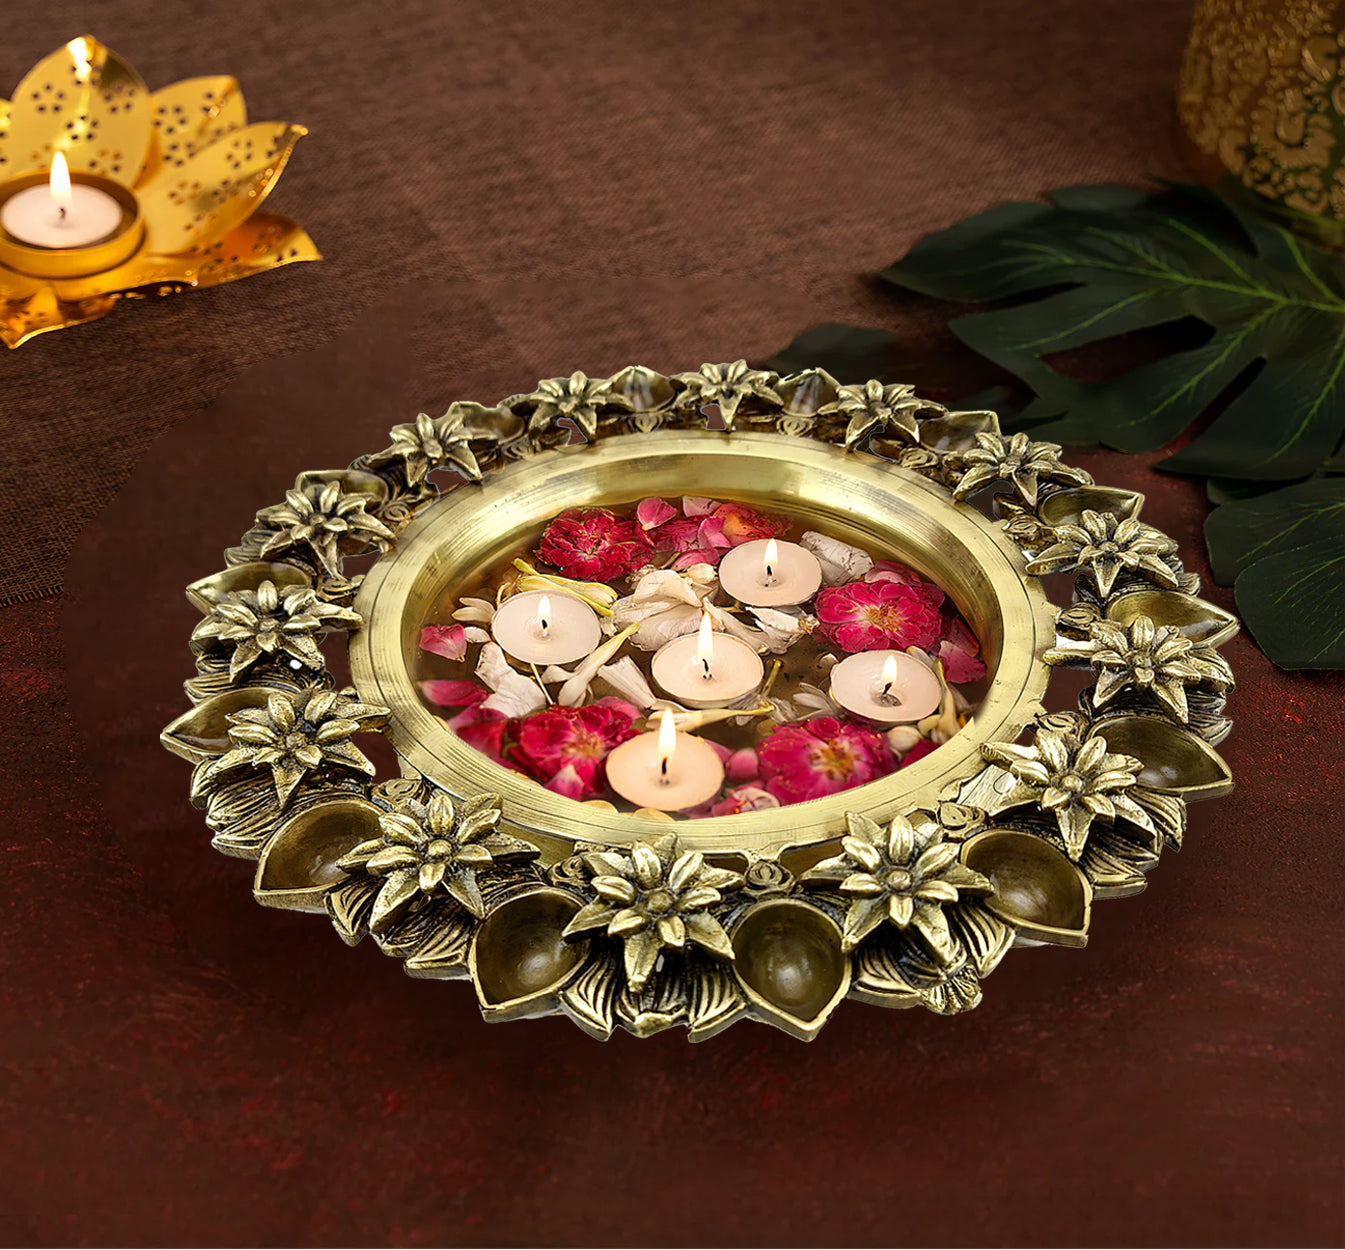 Brass 12 Inches Lotus Flower Design Urli Showpiece with 14 Diyas